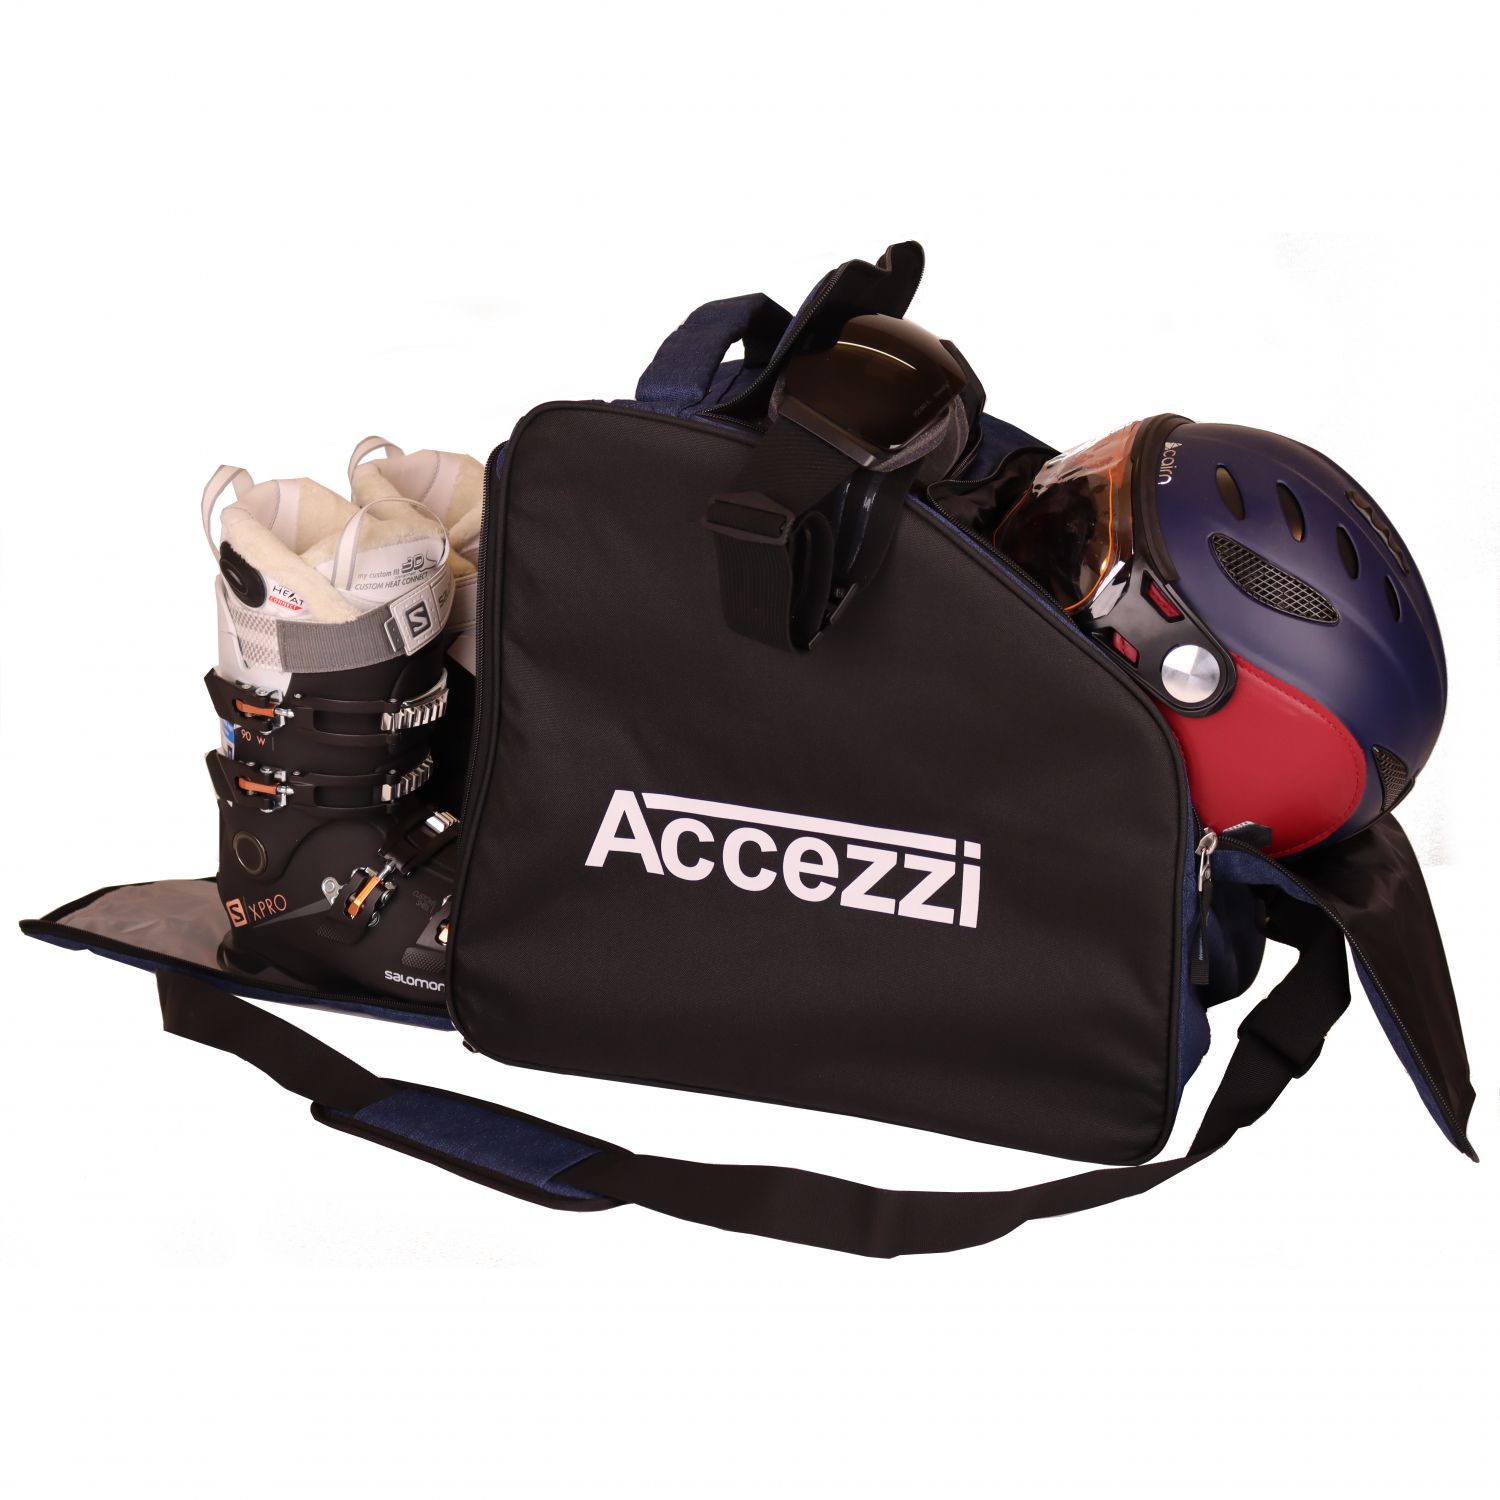 Accezzi Arosa, Stiefel- und Helmtasche, schwarz